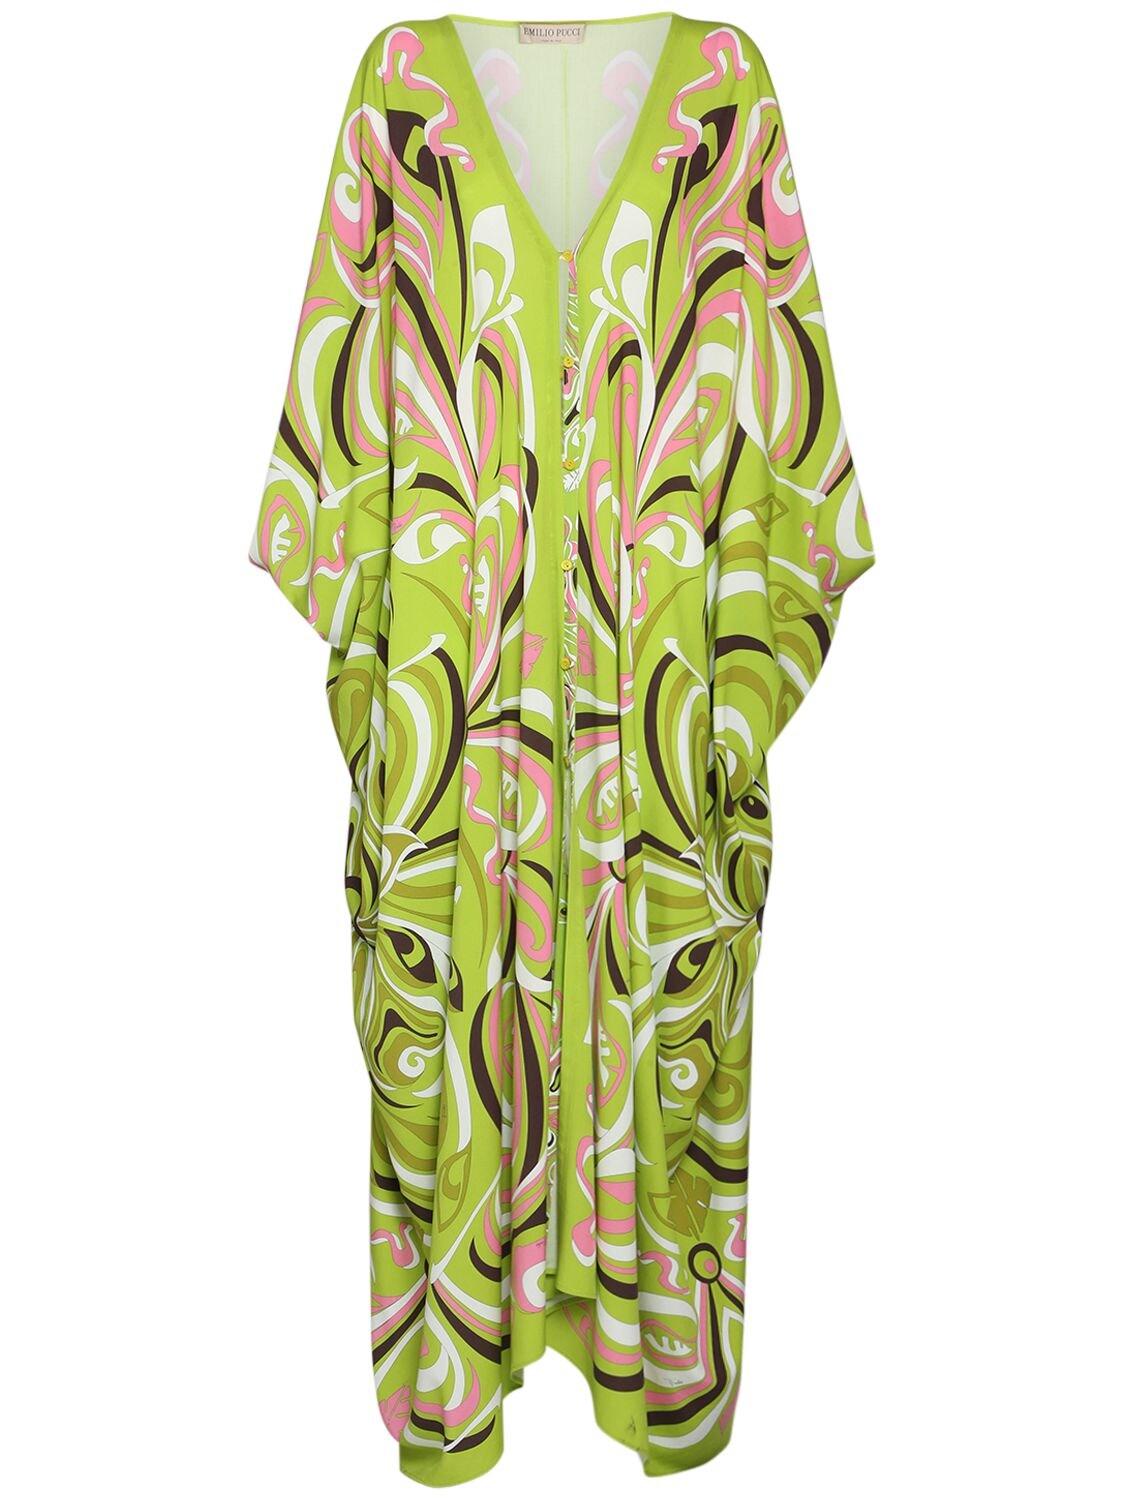 Printed Fluid Viscose Long Caftan Dress